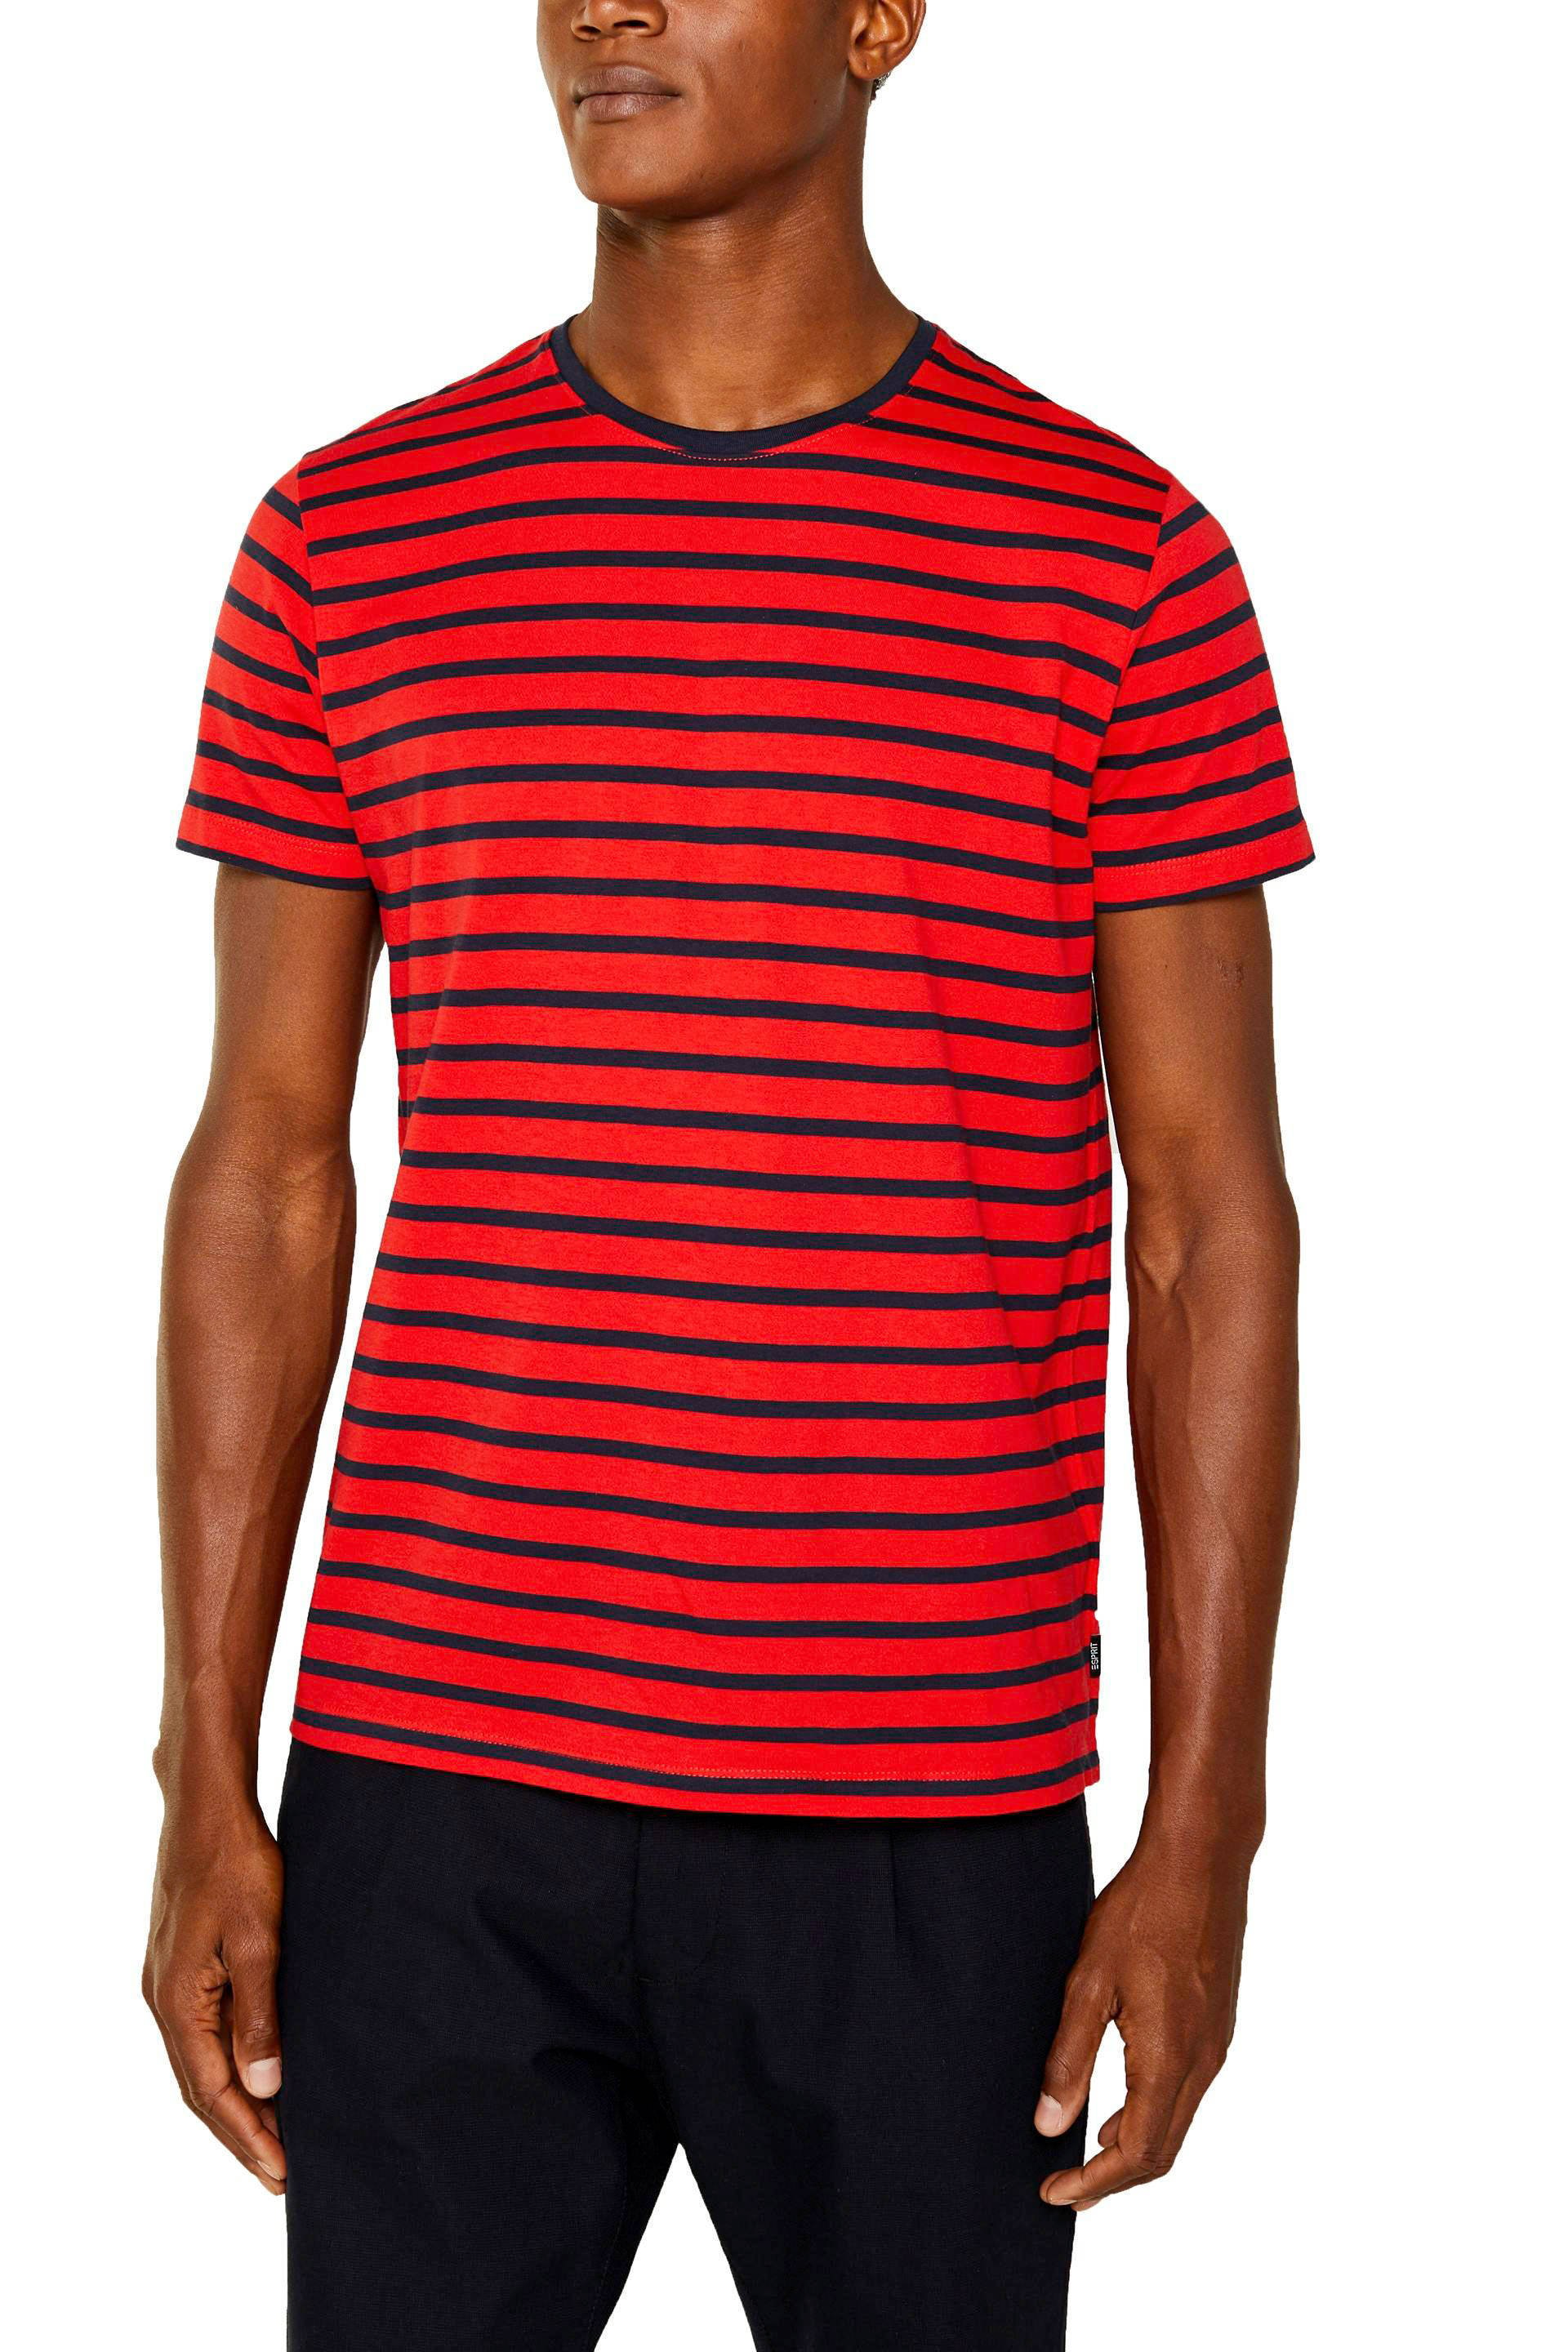 ESPRIT Men Casual gestreept T-shirt rood/zwart | wehkamp